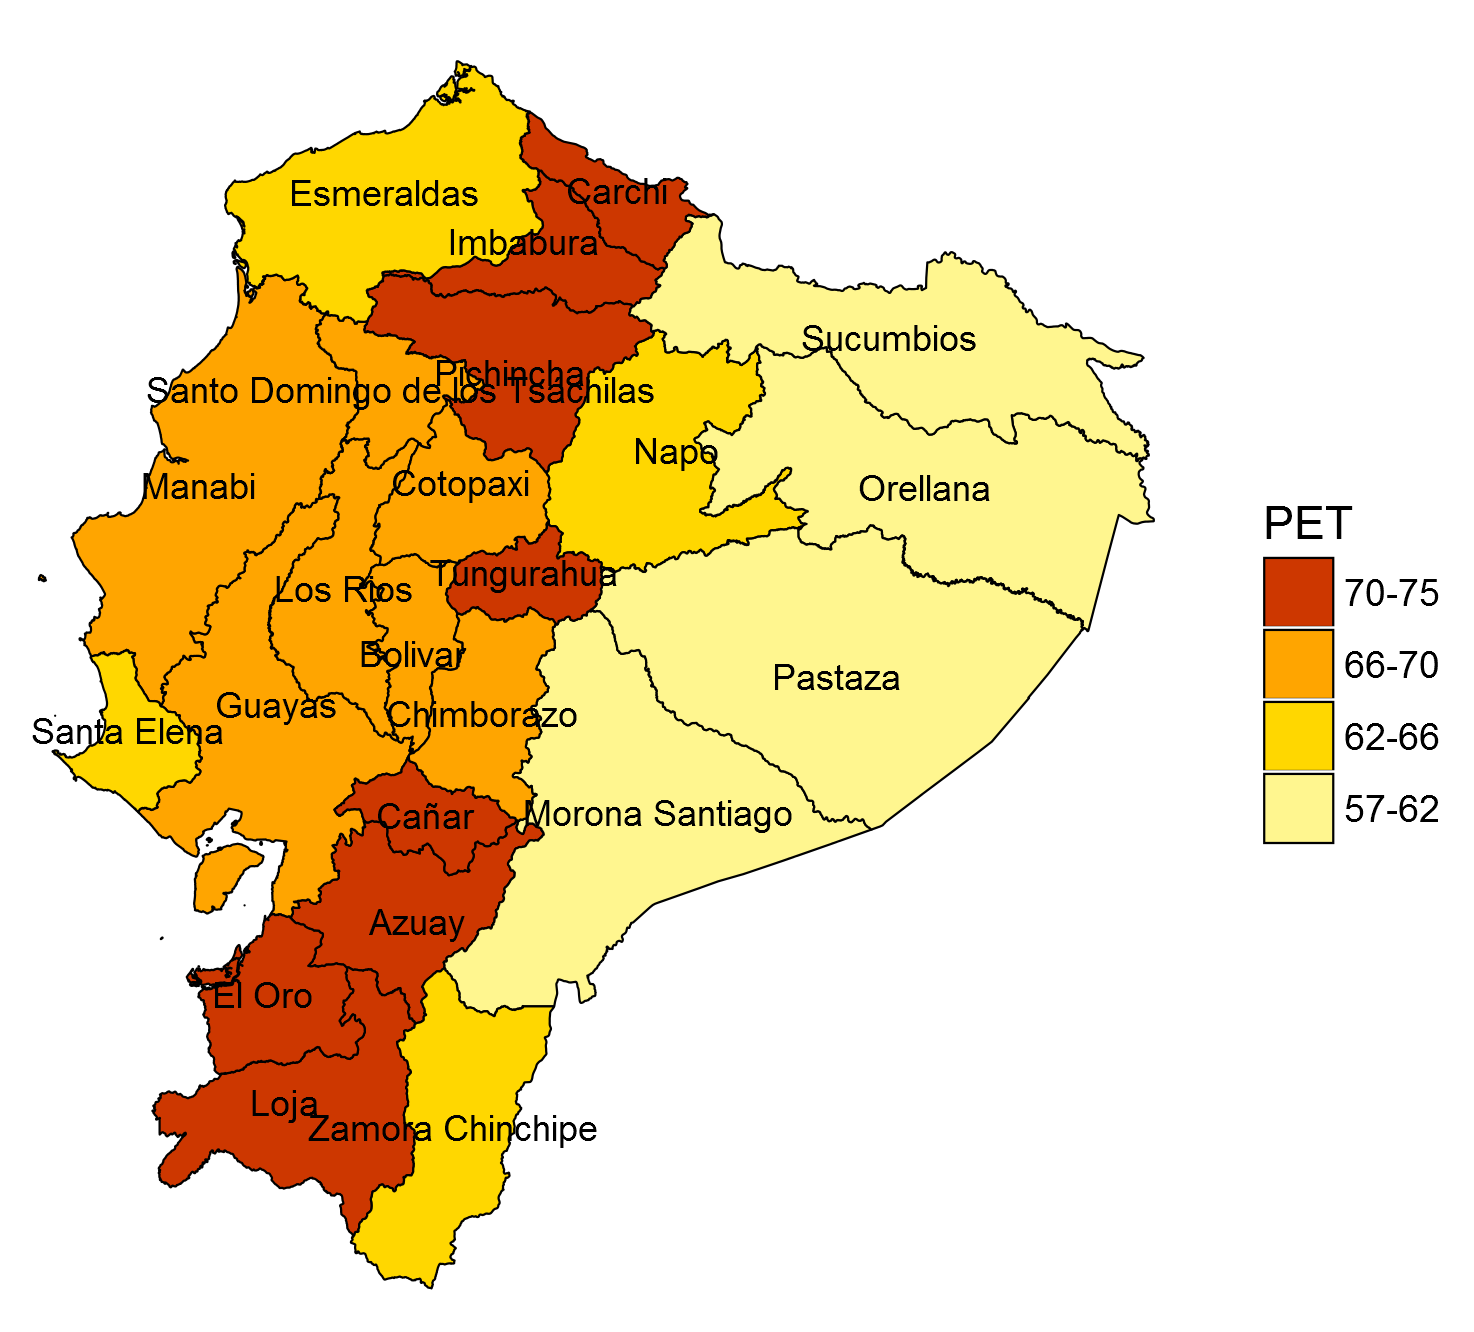 PET POR PROVINCIA A diciembre de 2015, las provincias que presentaban mayor tasa de población en edad de trabajar (PET) nacional fueron Carchi, Loja y Tungurahua con porcentajes de 73.7%, 73.4% y 72.